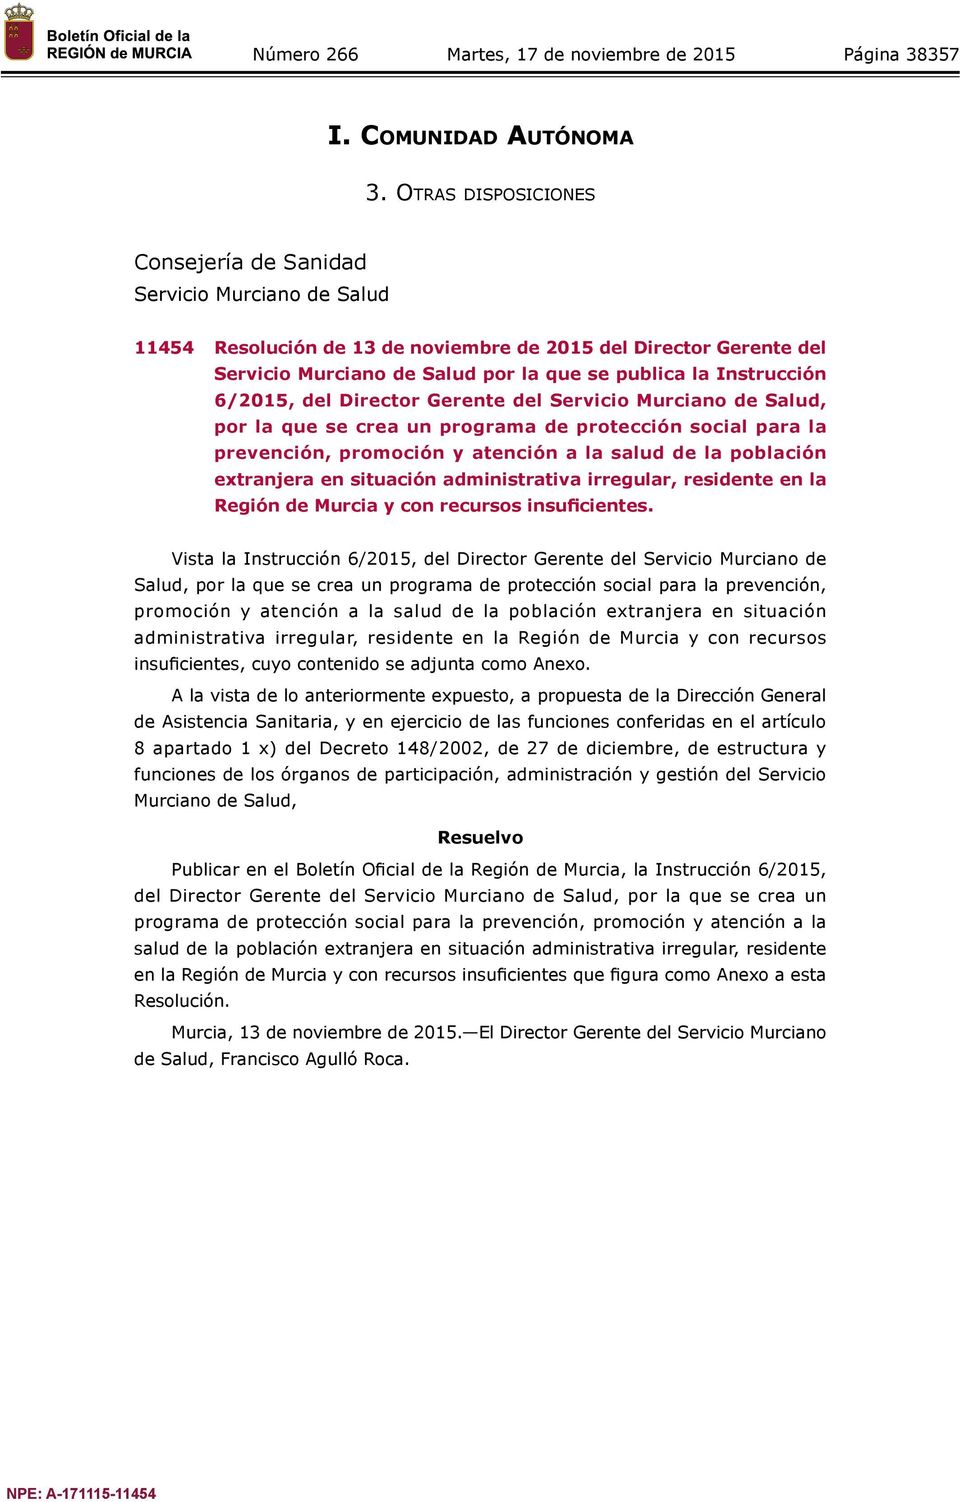 Instrucción 6/2015, del Director Gerente del Servicio Murciano de Salud, por la que se crea un programa de protección social para la prevención, promoción y atención a la salud de la población